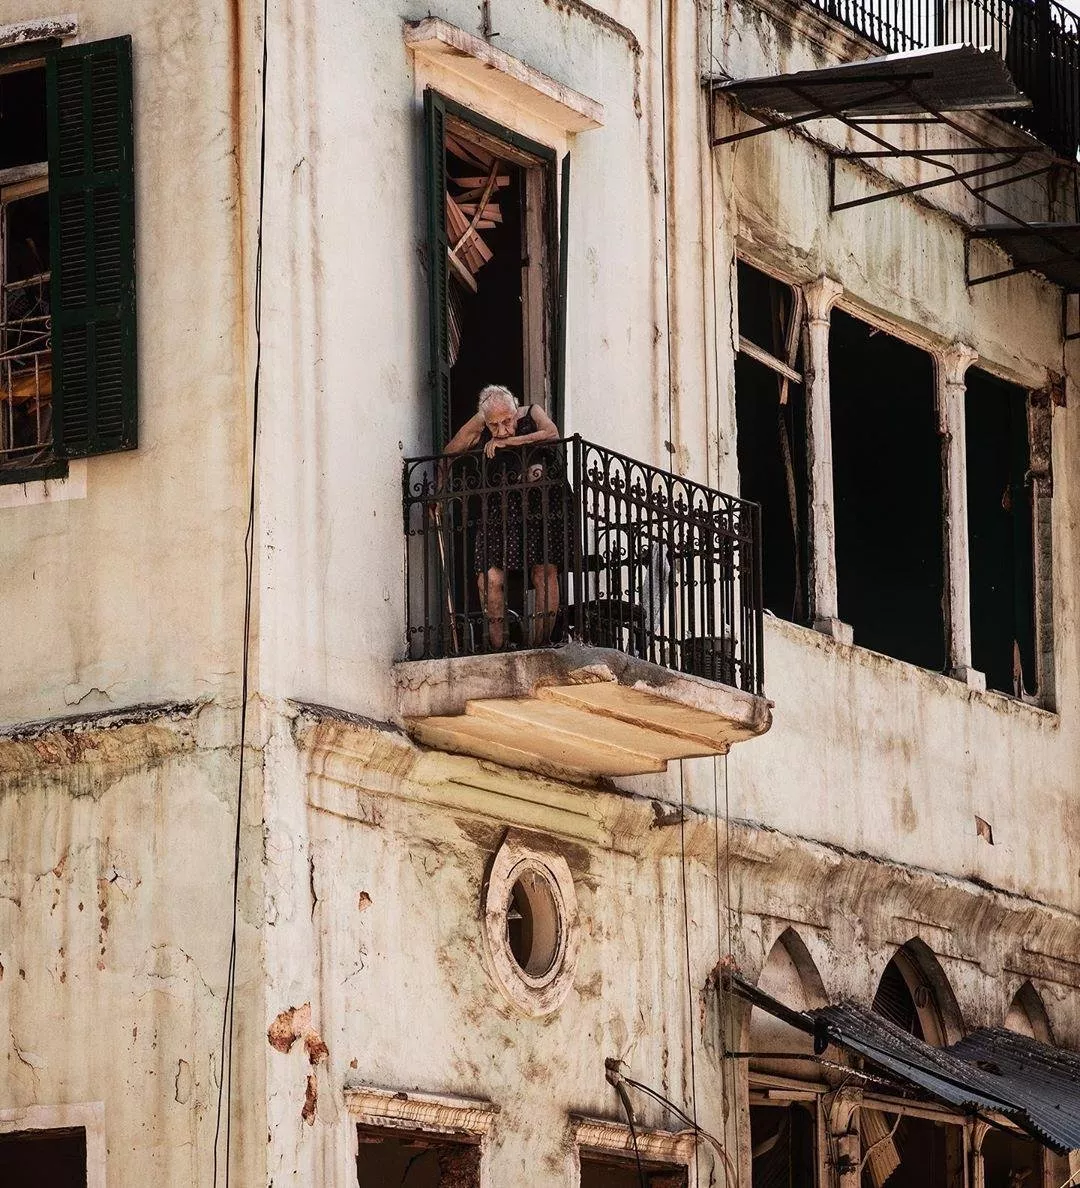 لحظات من انفجار بيروت ستطبع في ذاكرة الجميع، وثّقت بالصور والفيديوهات